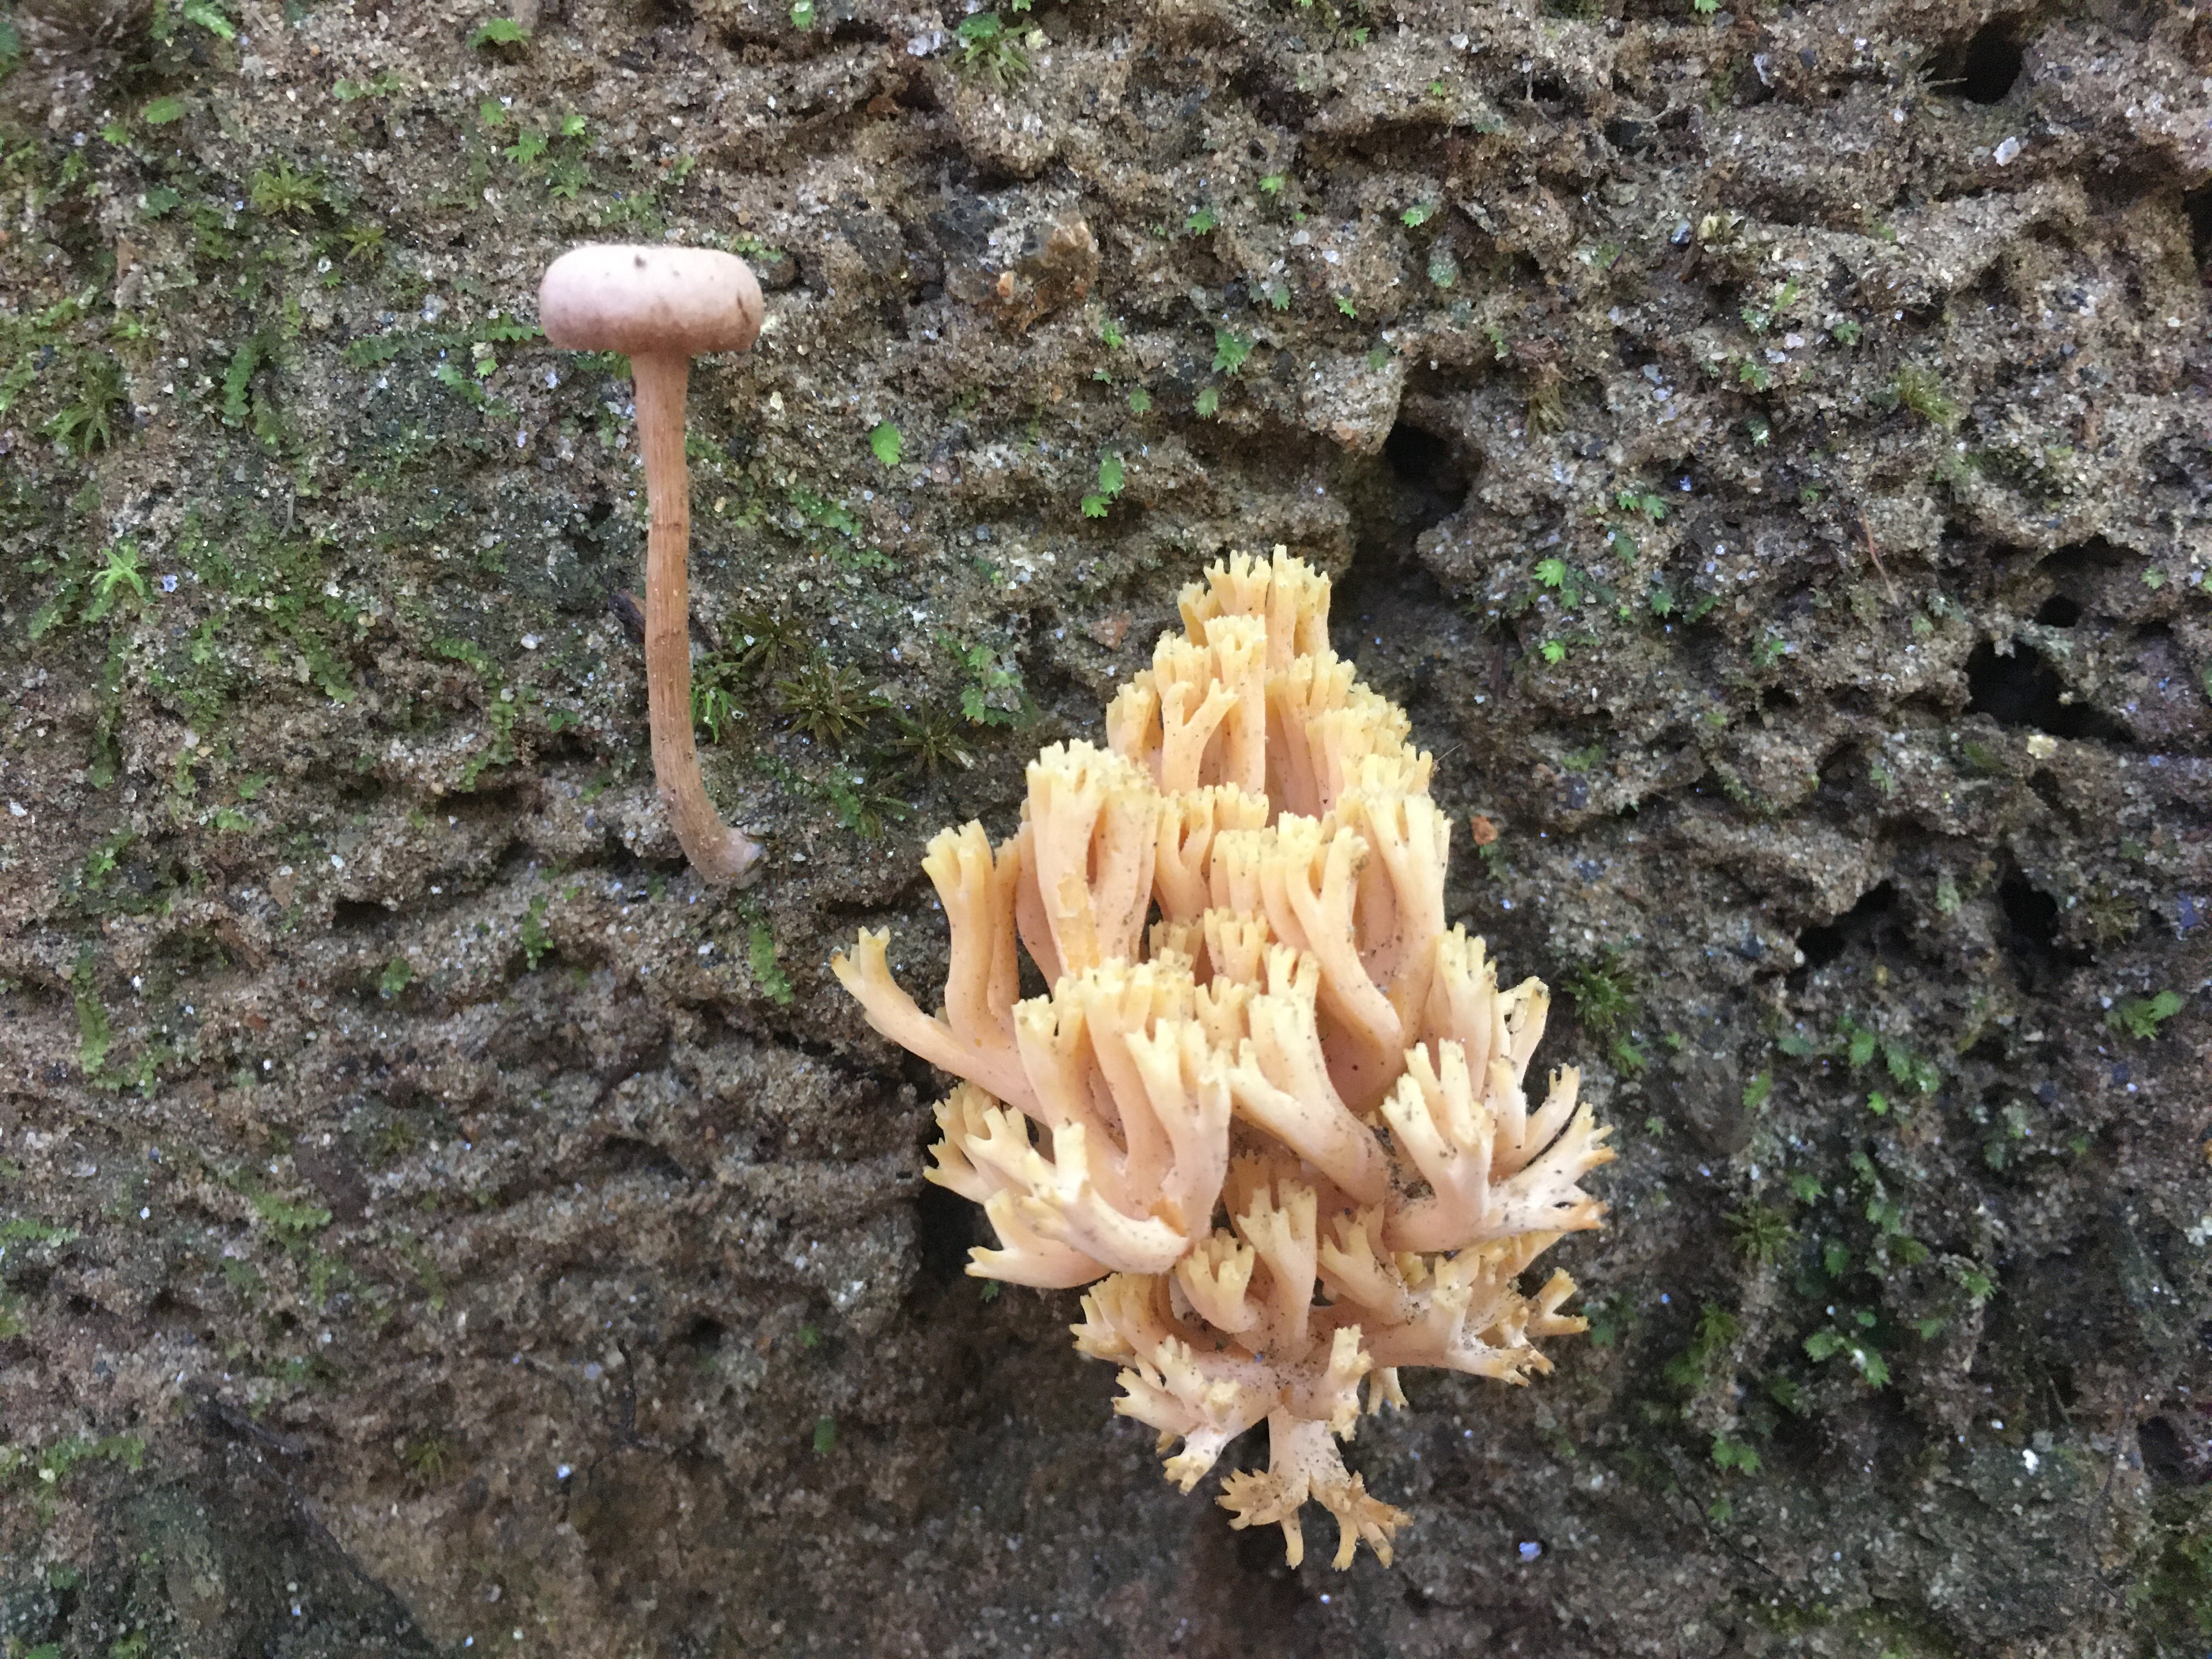 A cluster of mushrooms next to a regular mushroom.